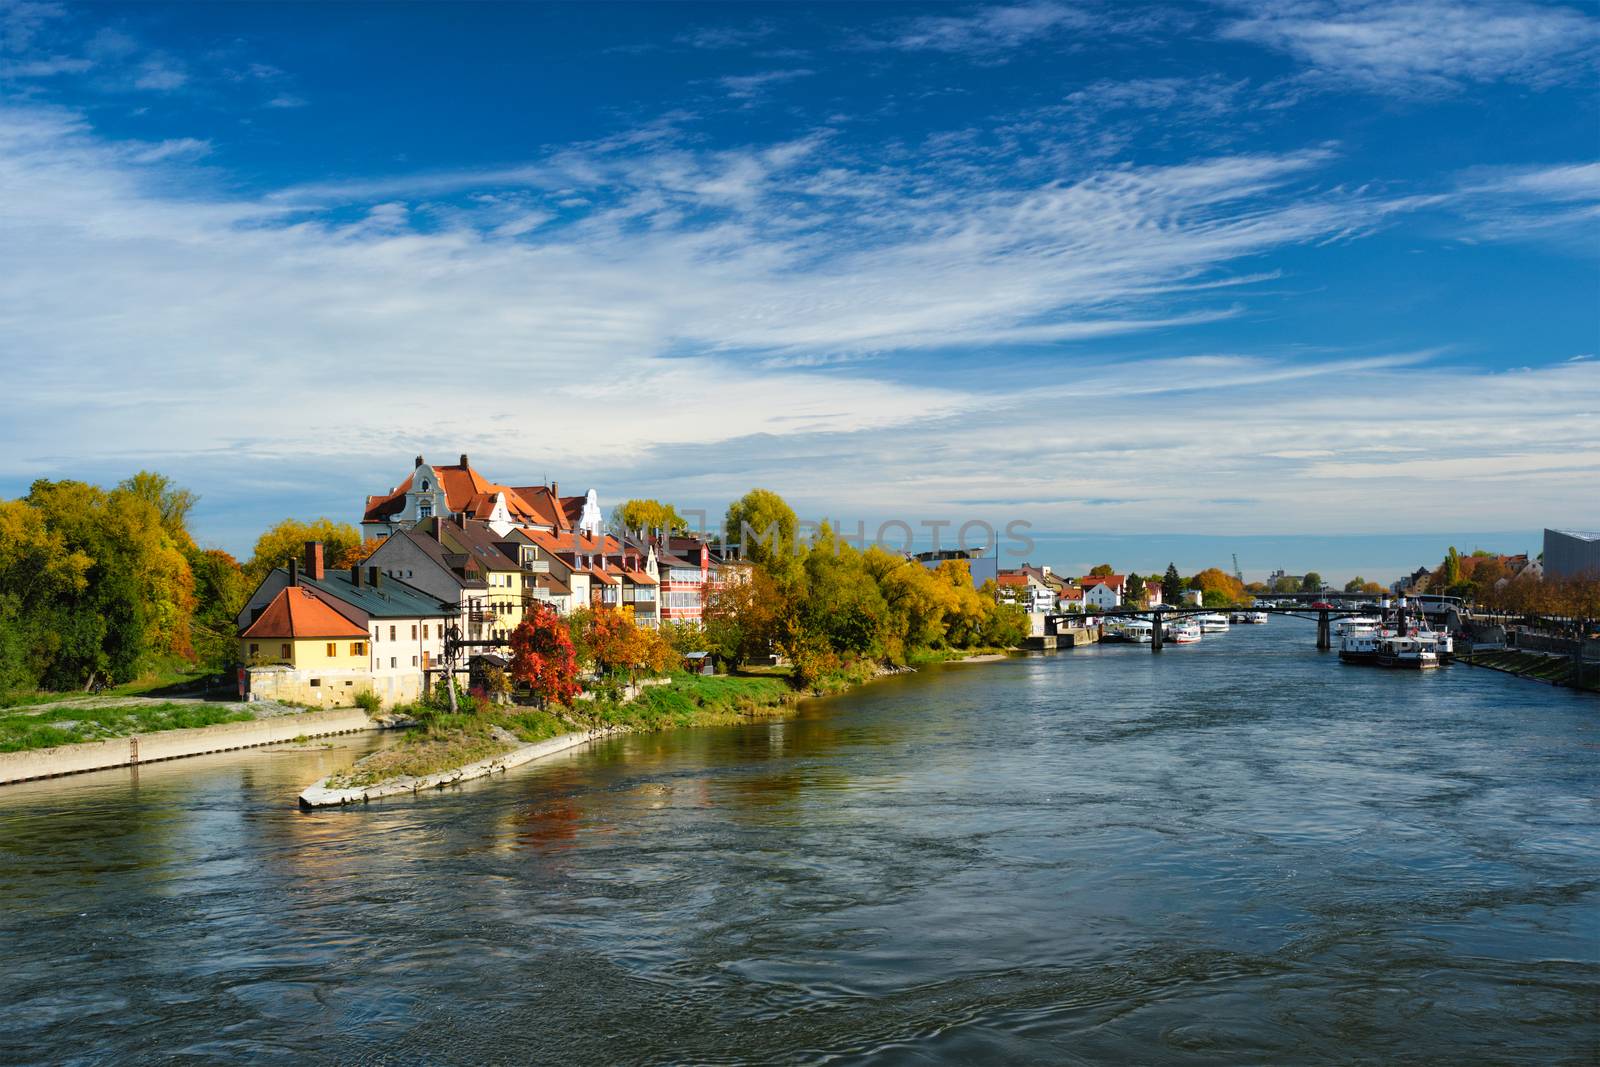 Old houses along Danube River in Regensburg, Bavaria, Germany